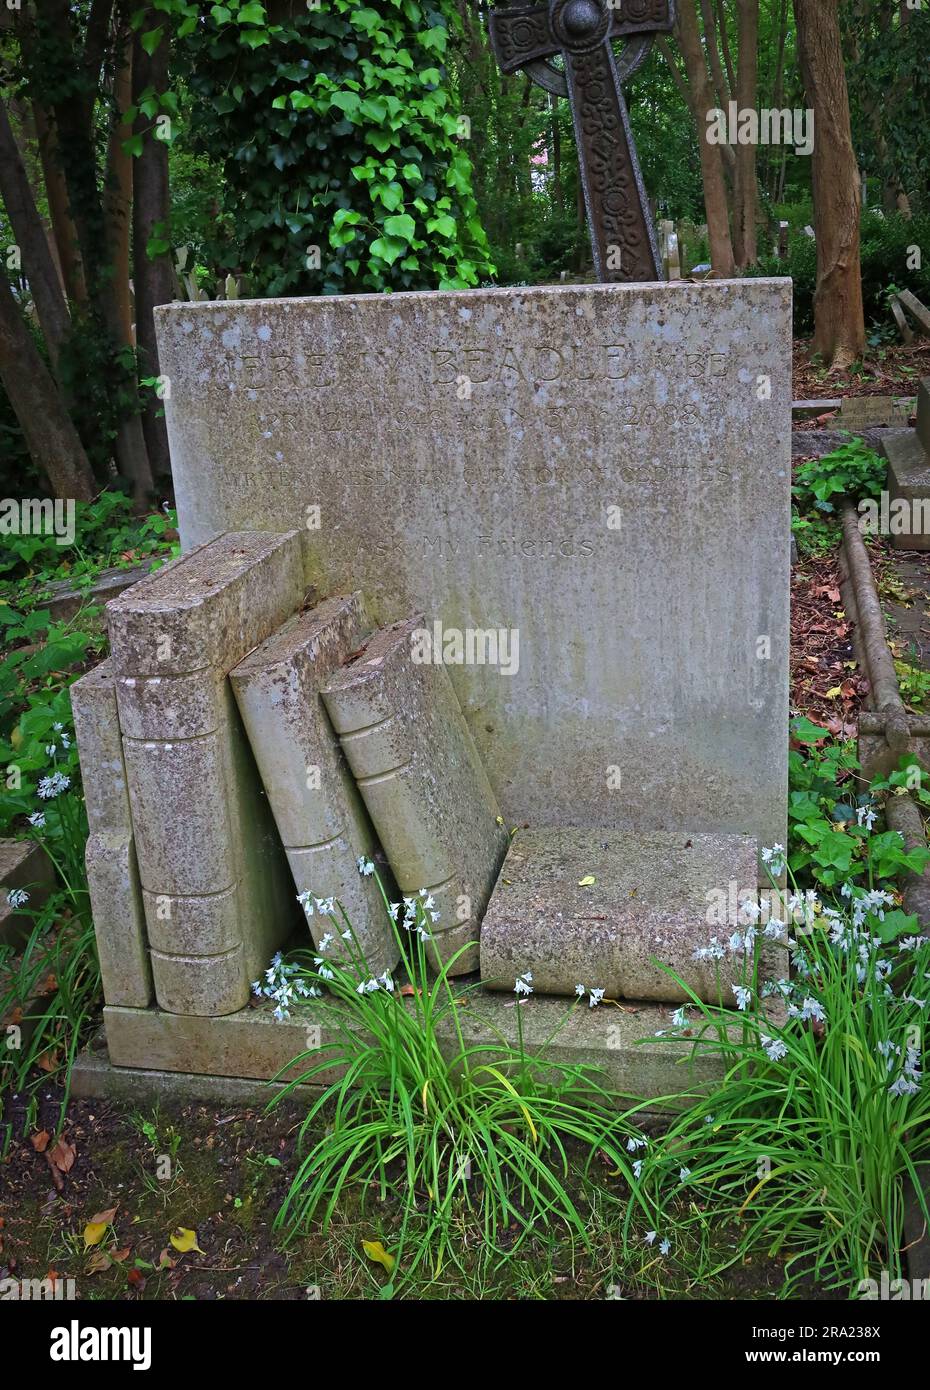 Highgate grave de Jeremy Beadle MBE, 12/04/1948 - 30/01/2008 , écrivain, présentateur de télévision, conservateur des oddities, Swain's Lane, Londres, Angleterre, Royaume-Uni, N6 6PJ Banque D'Images